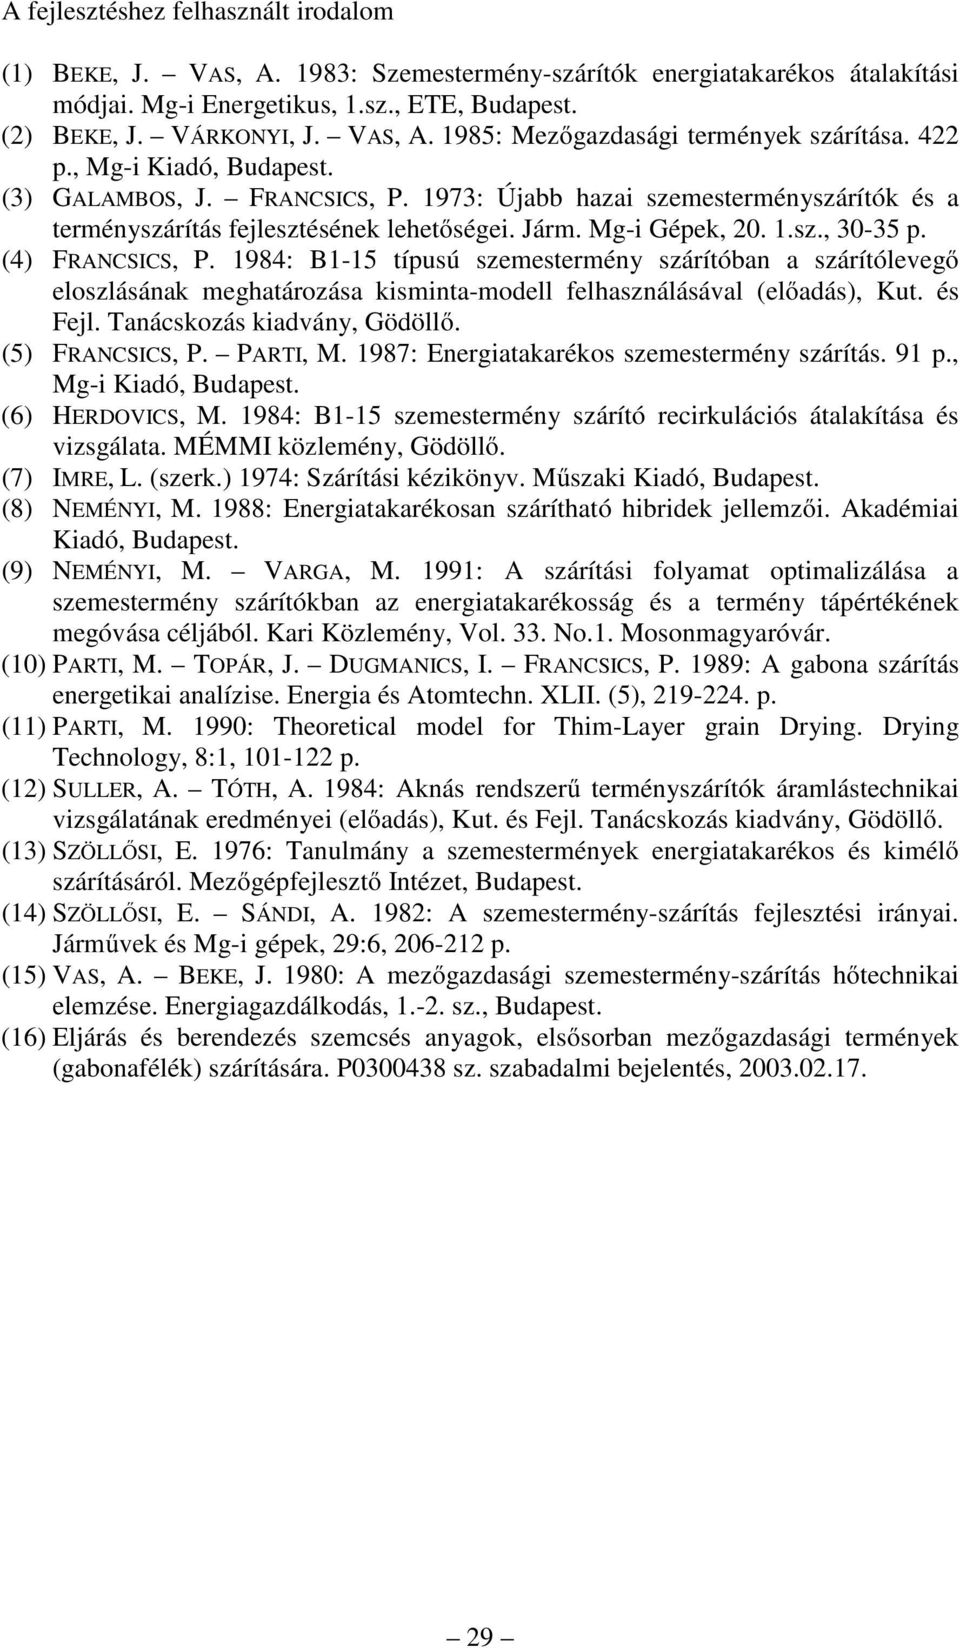 (4) FRANCSICS, P. 1984: B1-15 típusú szemestermény szárítóban a szárítólevegő eloszlásának meghatározása kisminta-modell felhasználásával (előadás), Kut. és Fejl. Tanácskozás kiadvány, Gödöllő.